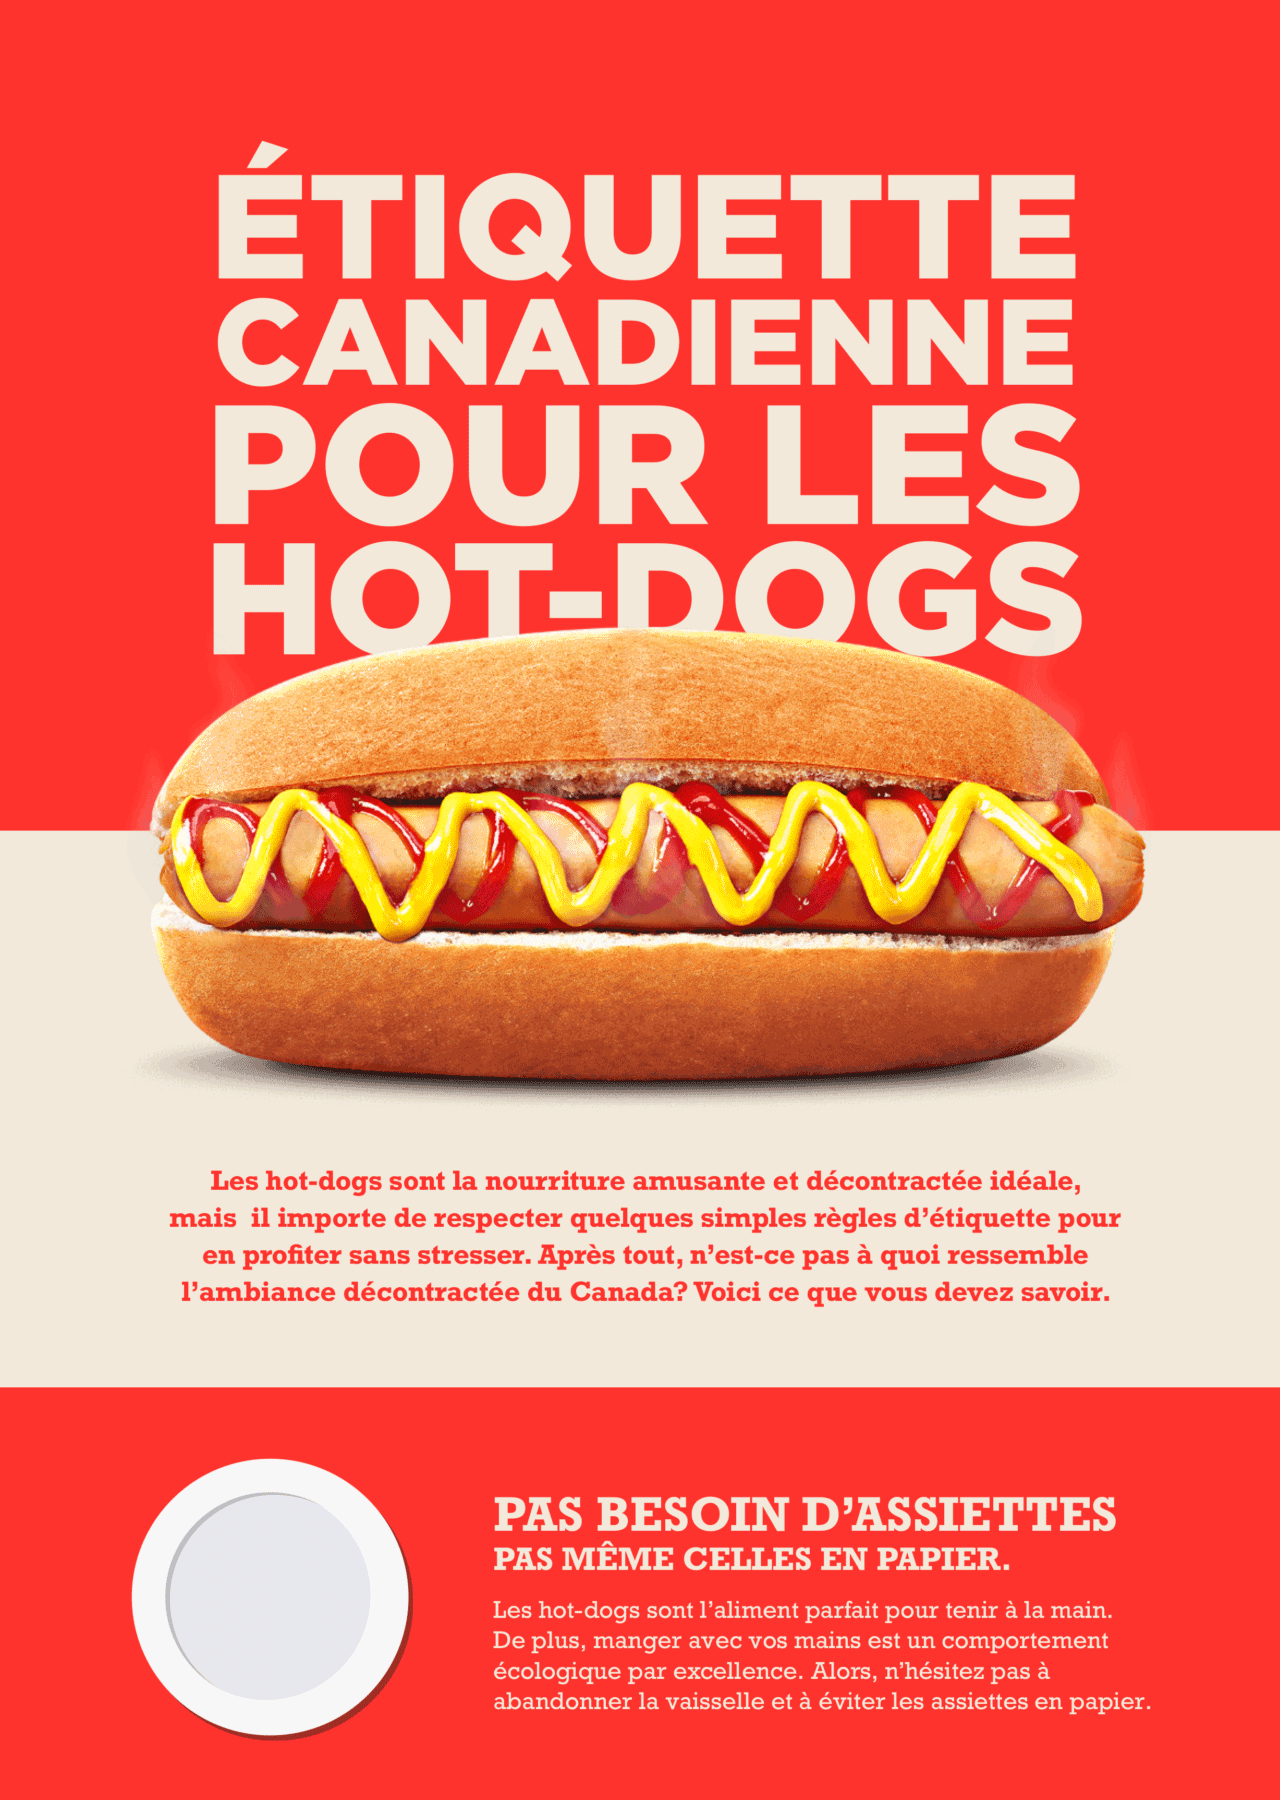 L'étiquette des hot-dogs canadiens